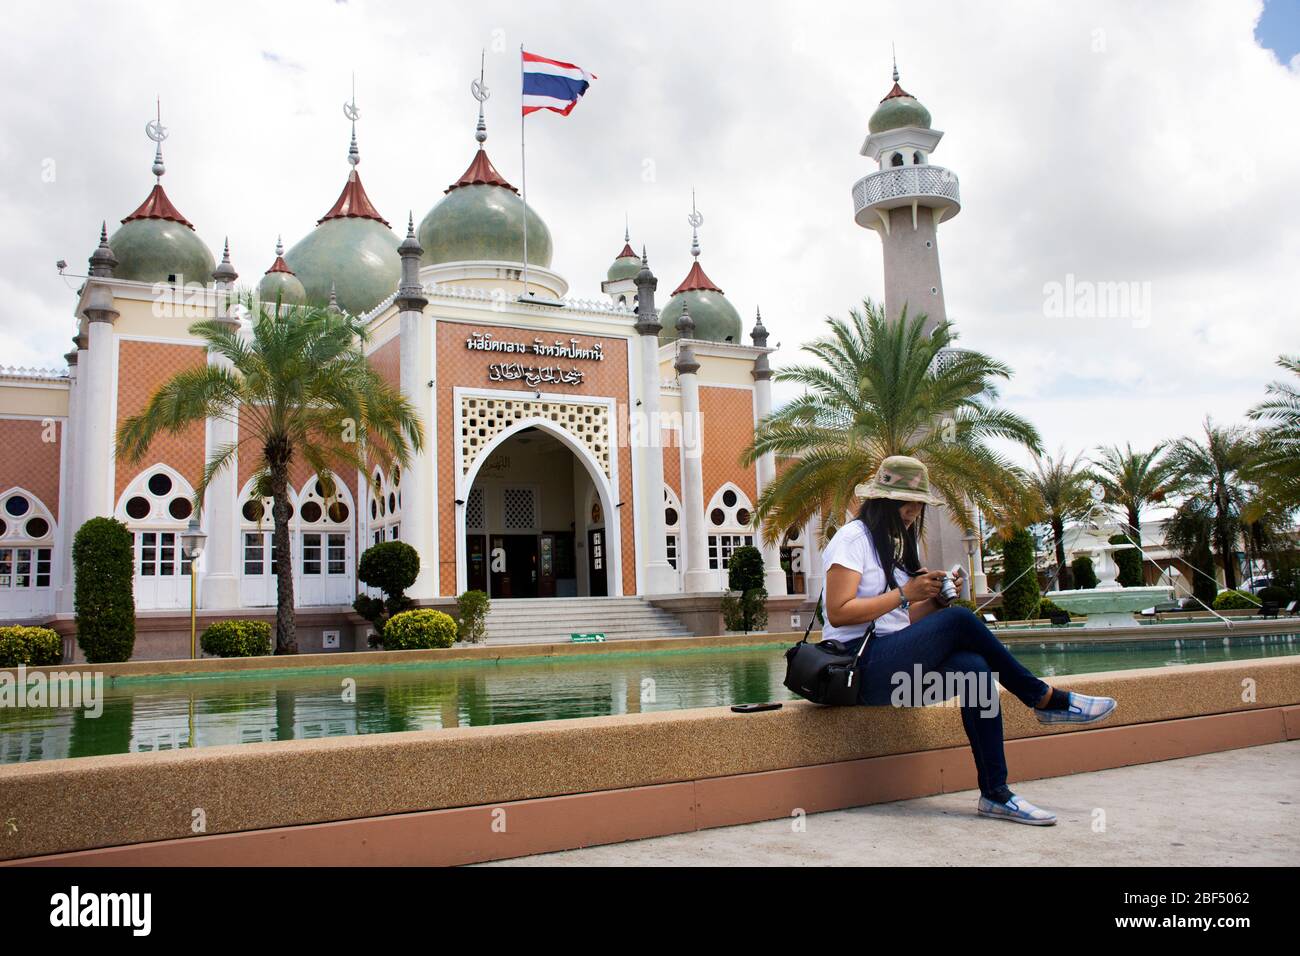 PATTANI, THAÏLANDE - 16 août : les voyageurs les femmes thaïlandaises voyagent visite et posent portrait pour prendre photo à la Mosquée centrale ou Masjid klang de Pattani au sou Banque D'Images